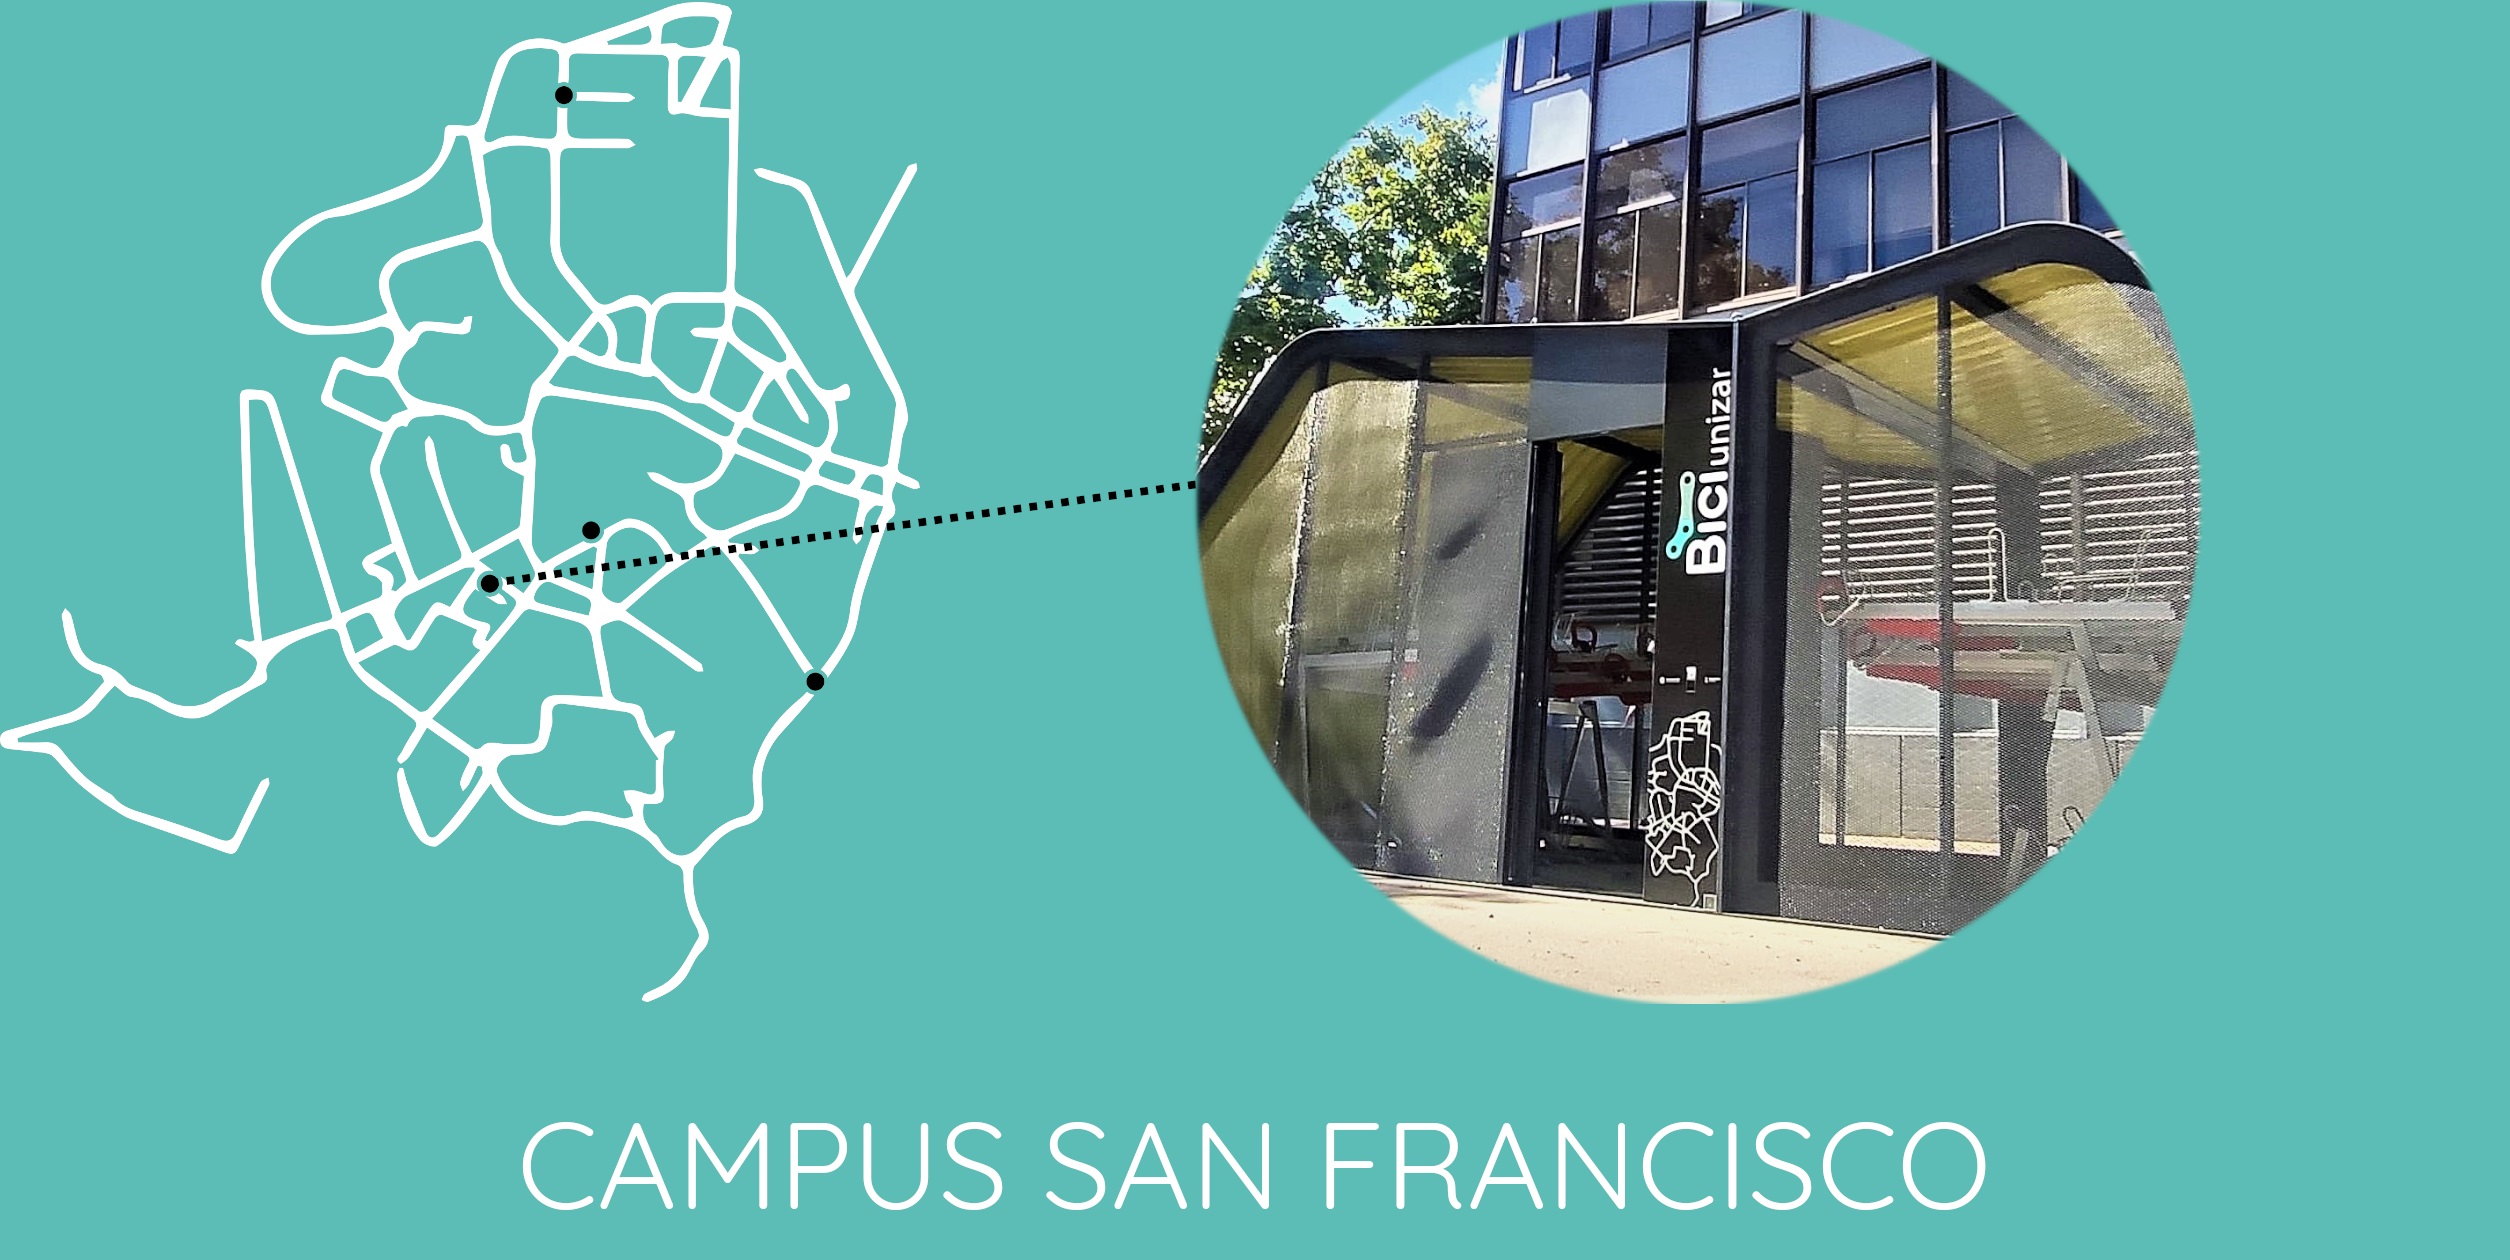 Campus San Francisco